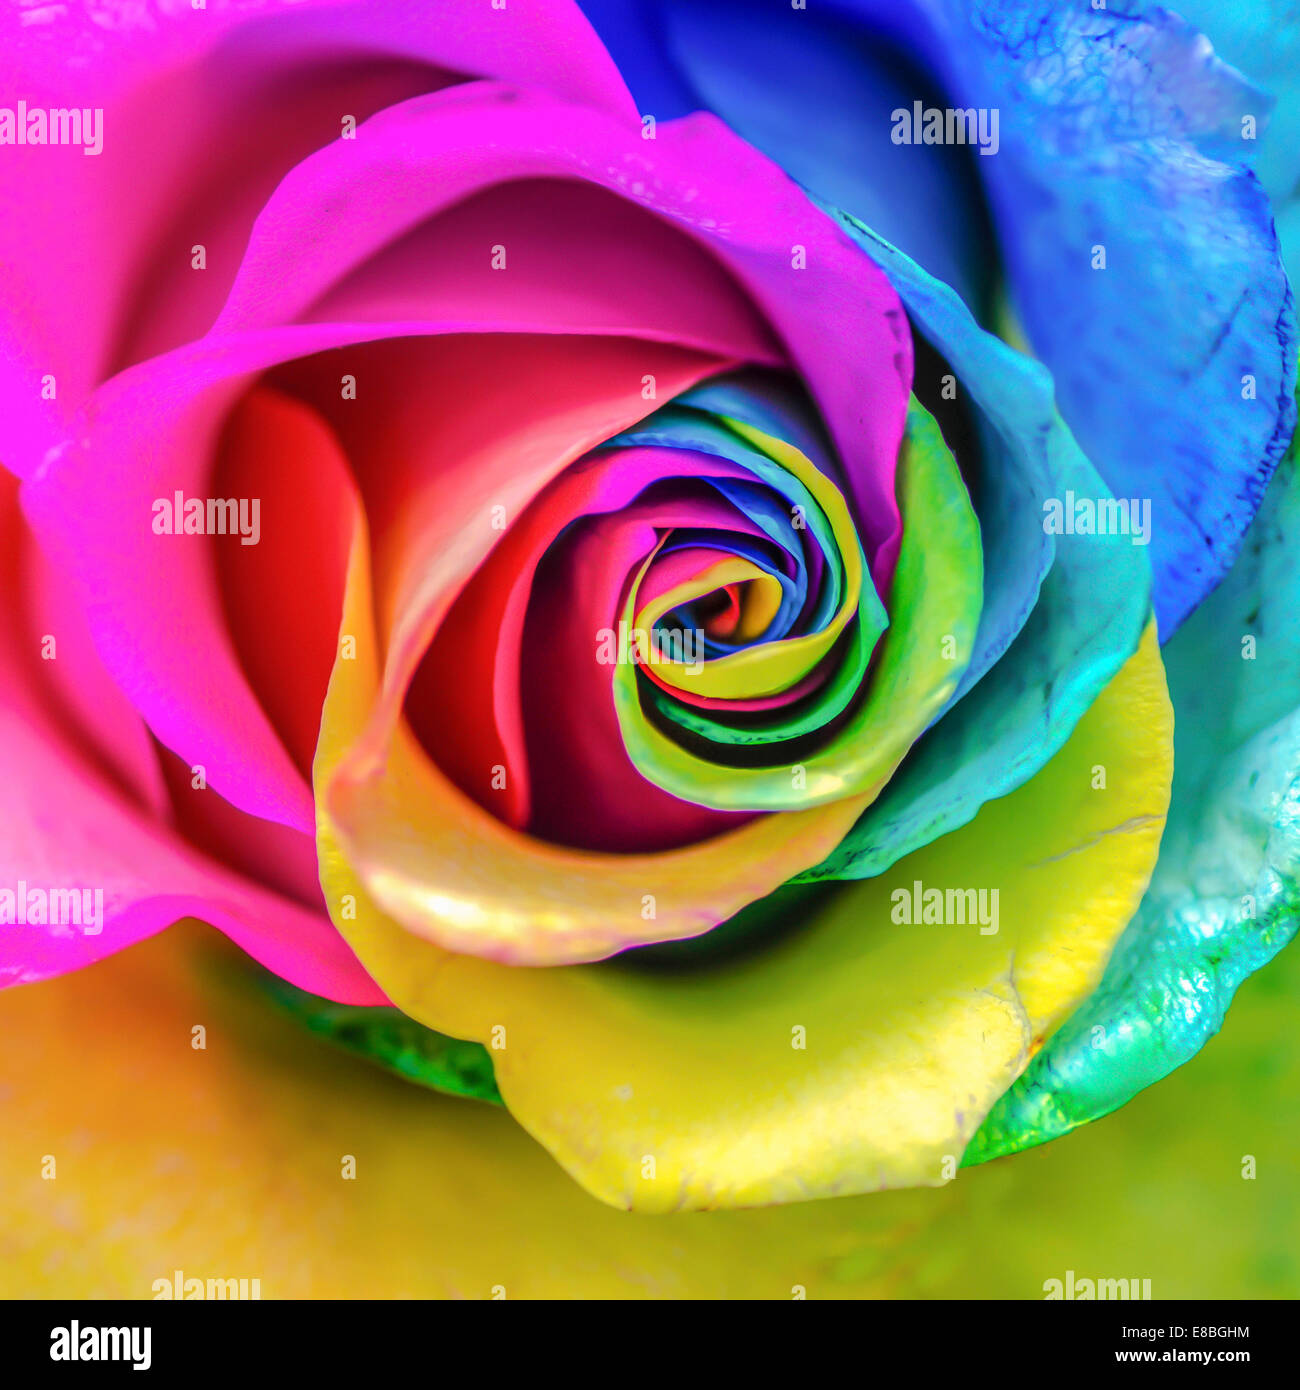 Rosa arcobaleno immagini e fotografie stock ad alta risoluzione - Alamy